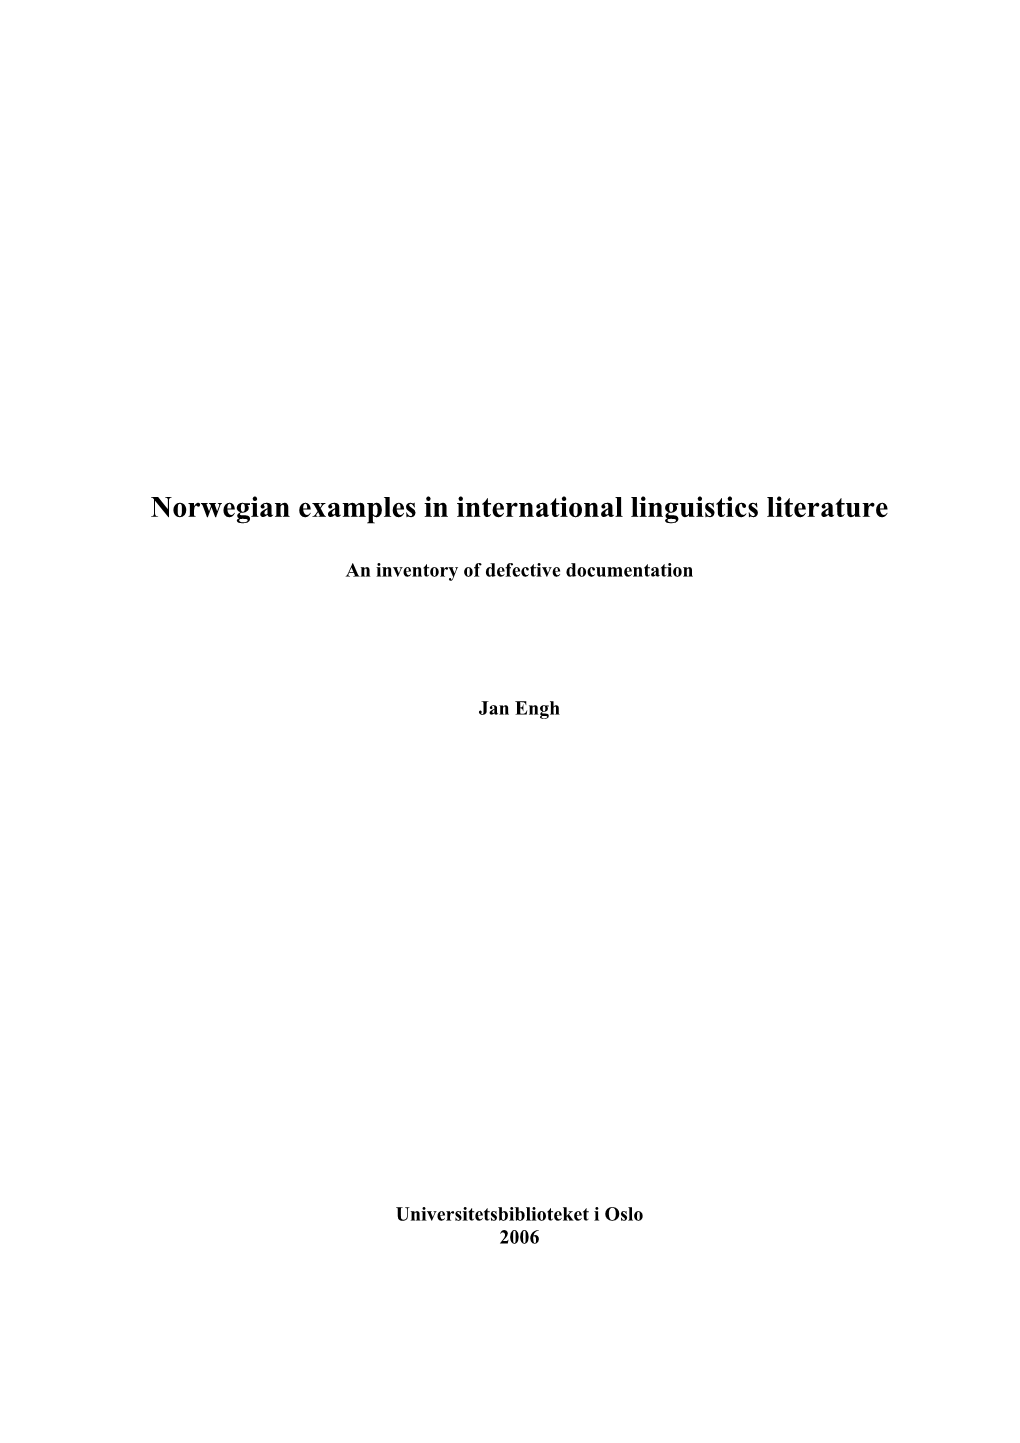 Norwegian Examples in International Linguistics Literature